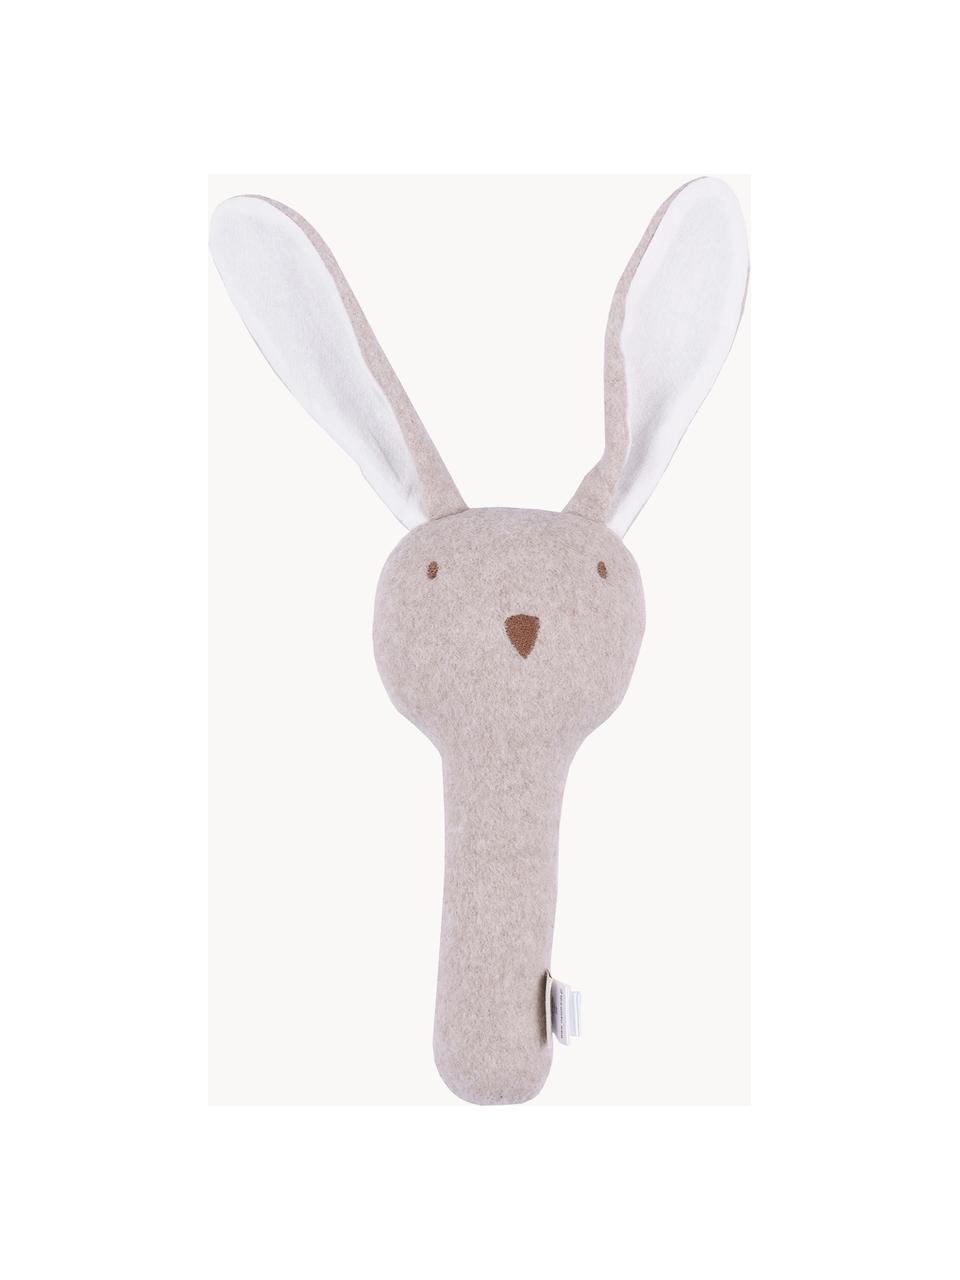 Handgefertigte Rassel Rabbit, Baumwolle, Nougat, Weiß, B 10 x L 21 cm